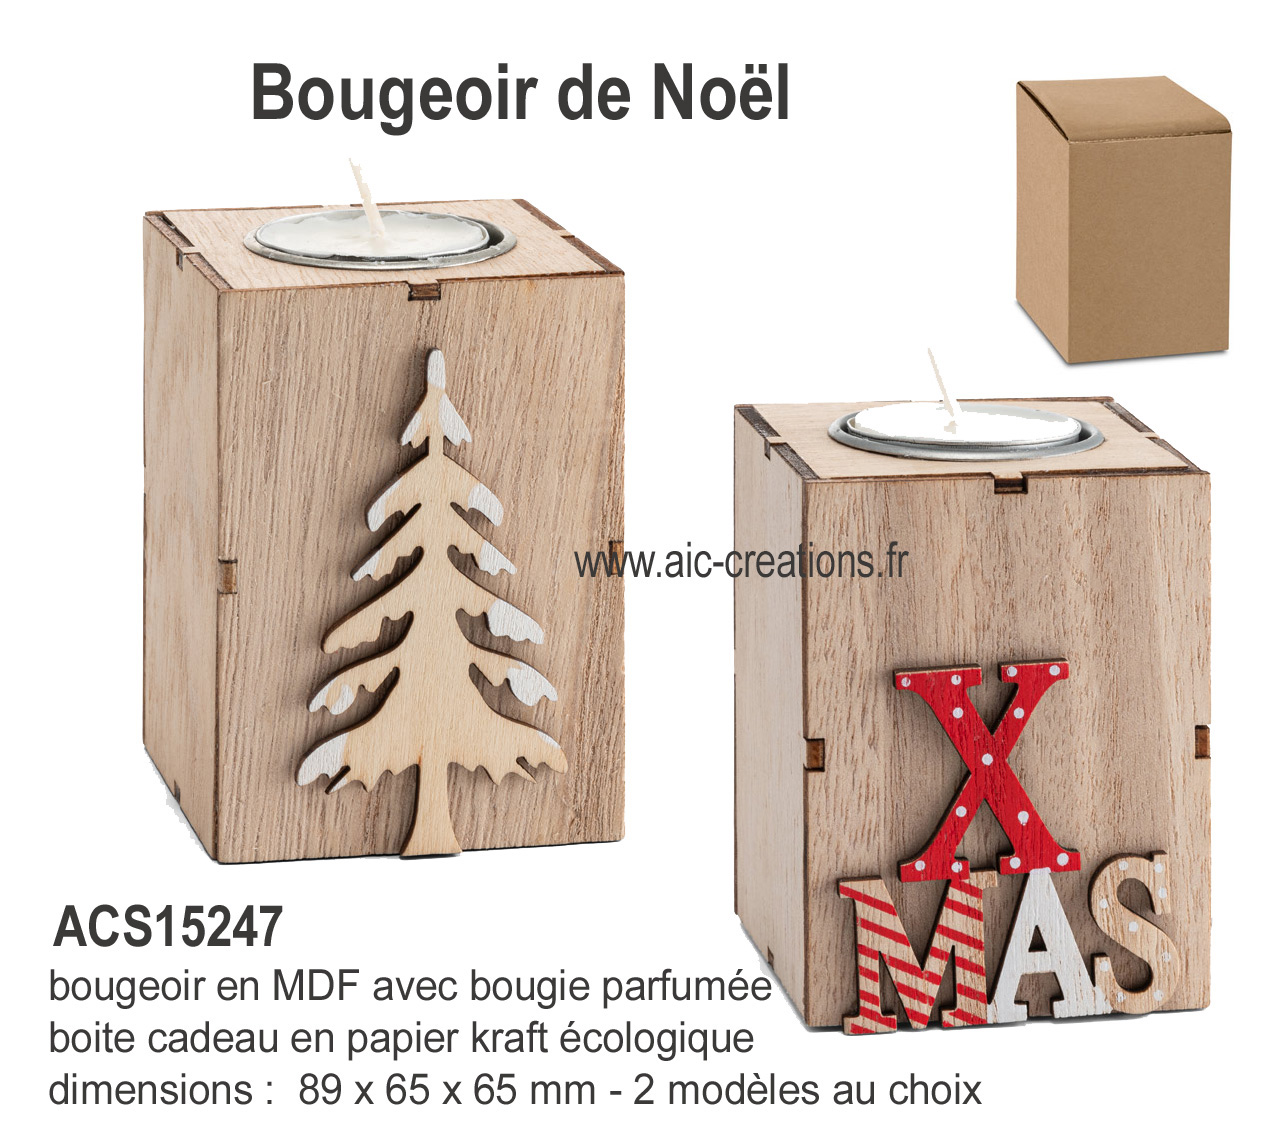 bougeoir en bois de MDF écologique avec bougie parfumée, bougeoir en bois personnalisable, Bougeoir de Noel